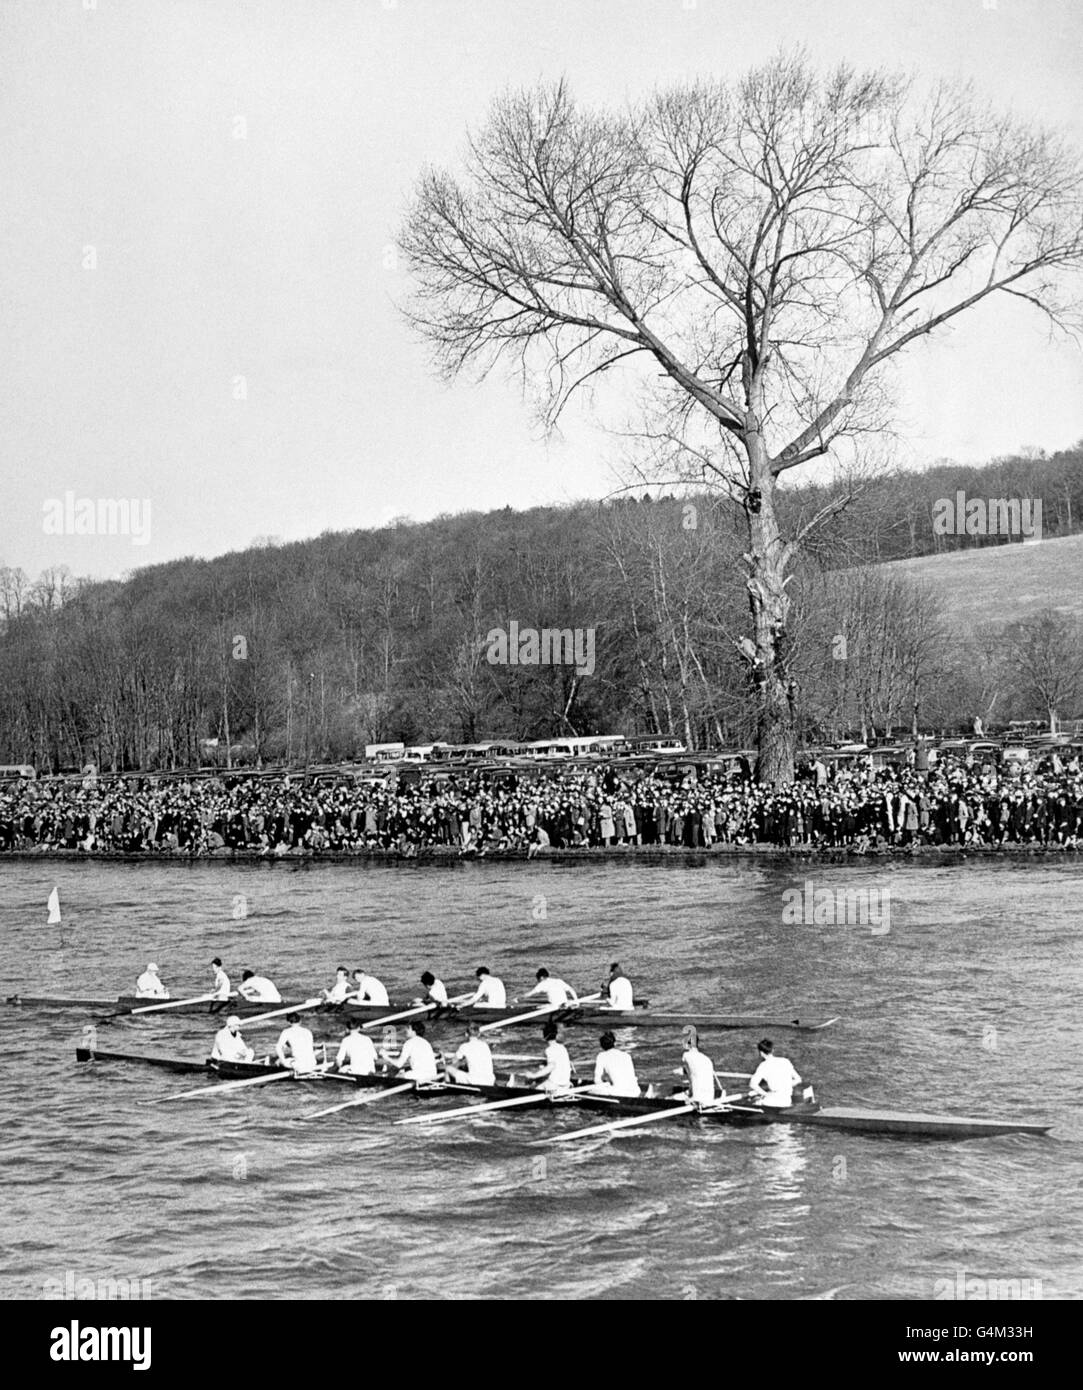 La Seconde Guerre mondiale - Empire britannique - Le front intérieur - Oxford v Cambridge Boat Race - Henley-on-Thames - 1940 Banque D'Images